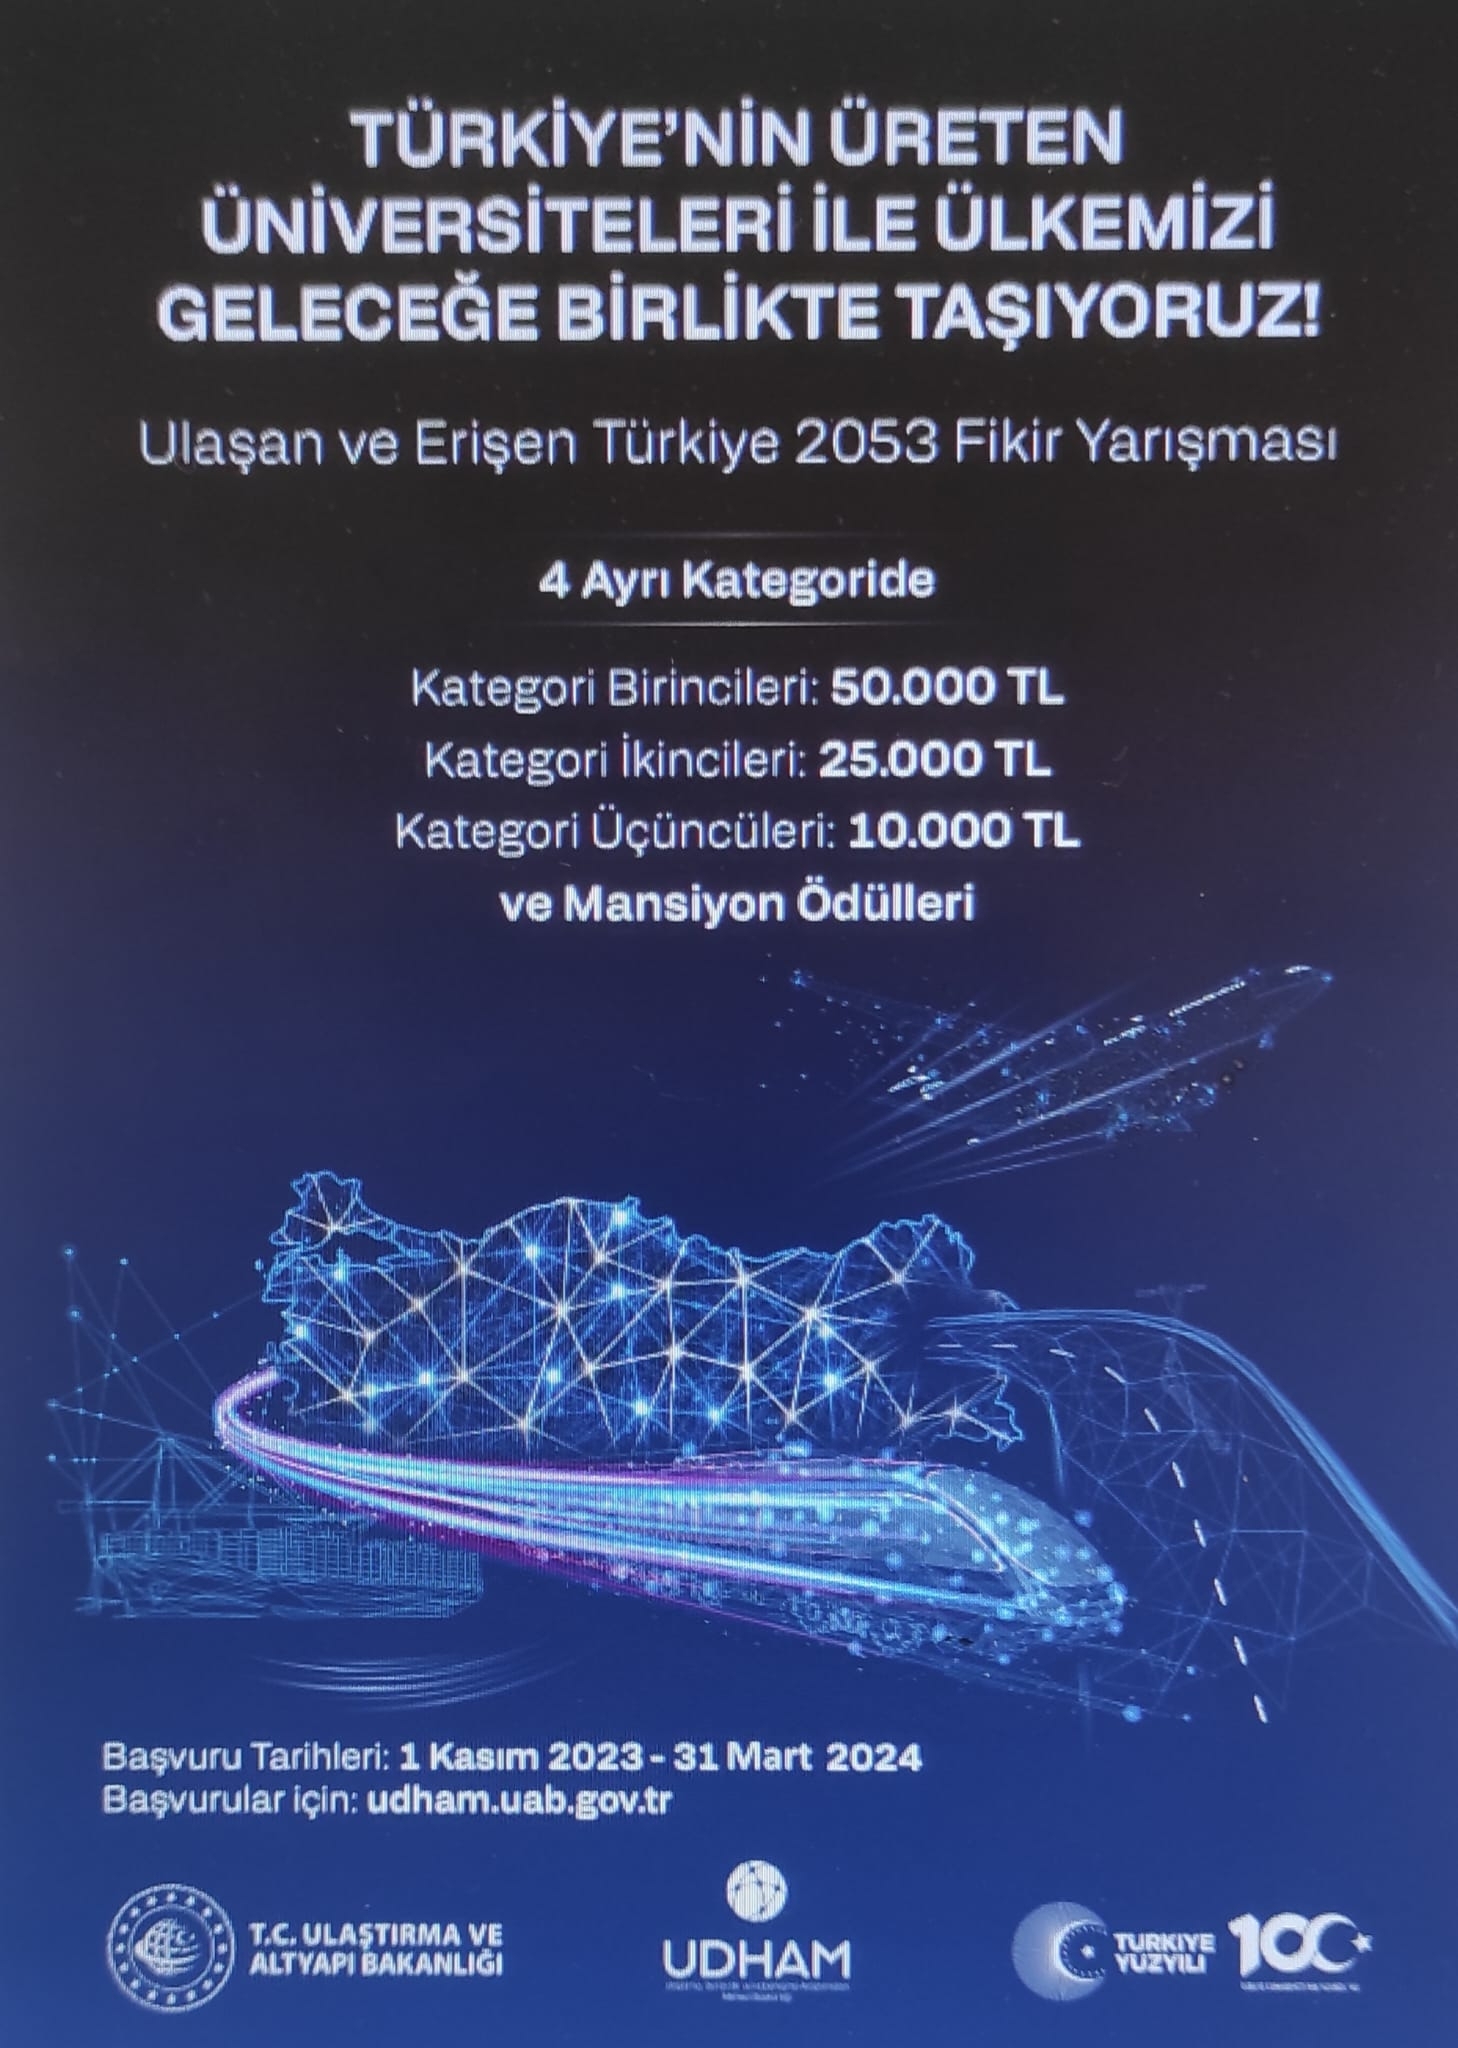 Ulaşan ve Erişen Türkiye 2053 Fikir Yarışması:Türkiyenin Üreten Üniversiteleri İle Ülkemizi Geleceğe Birlikte Taşıyoruz.-1